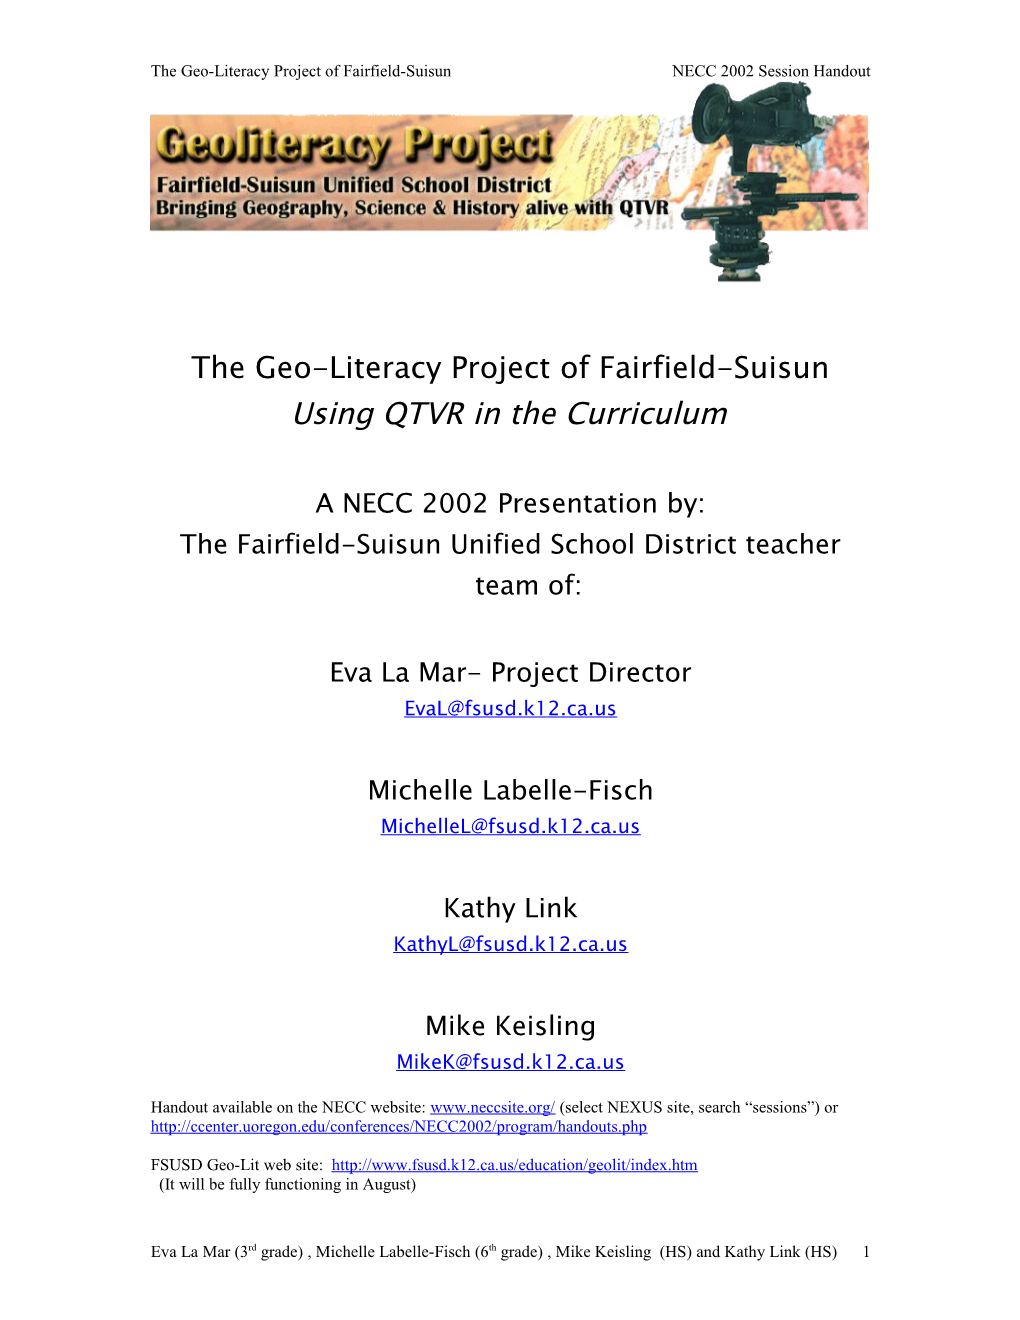 The Geo-Literacy Project of Fairfield-Suisun